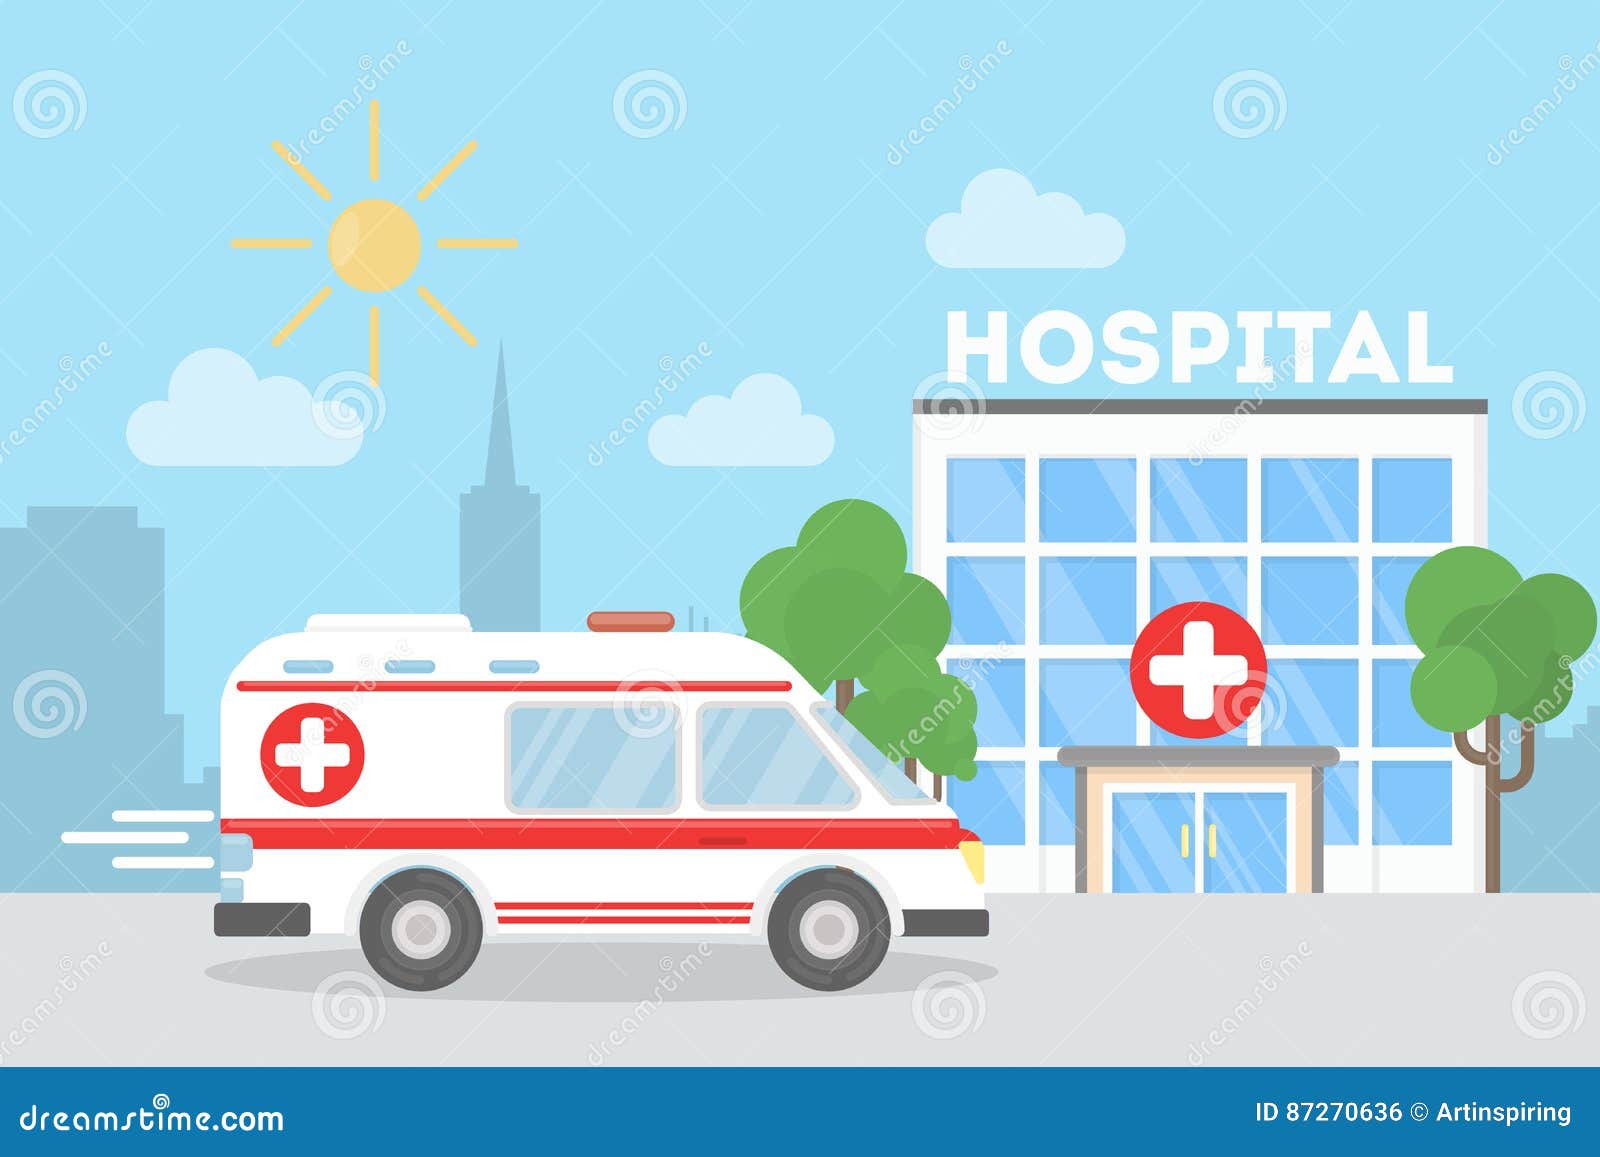 Рисунок скорой помощи и больницы